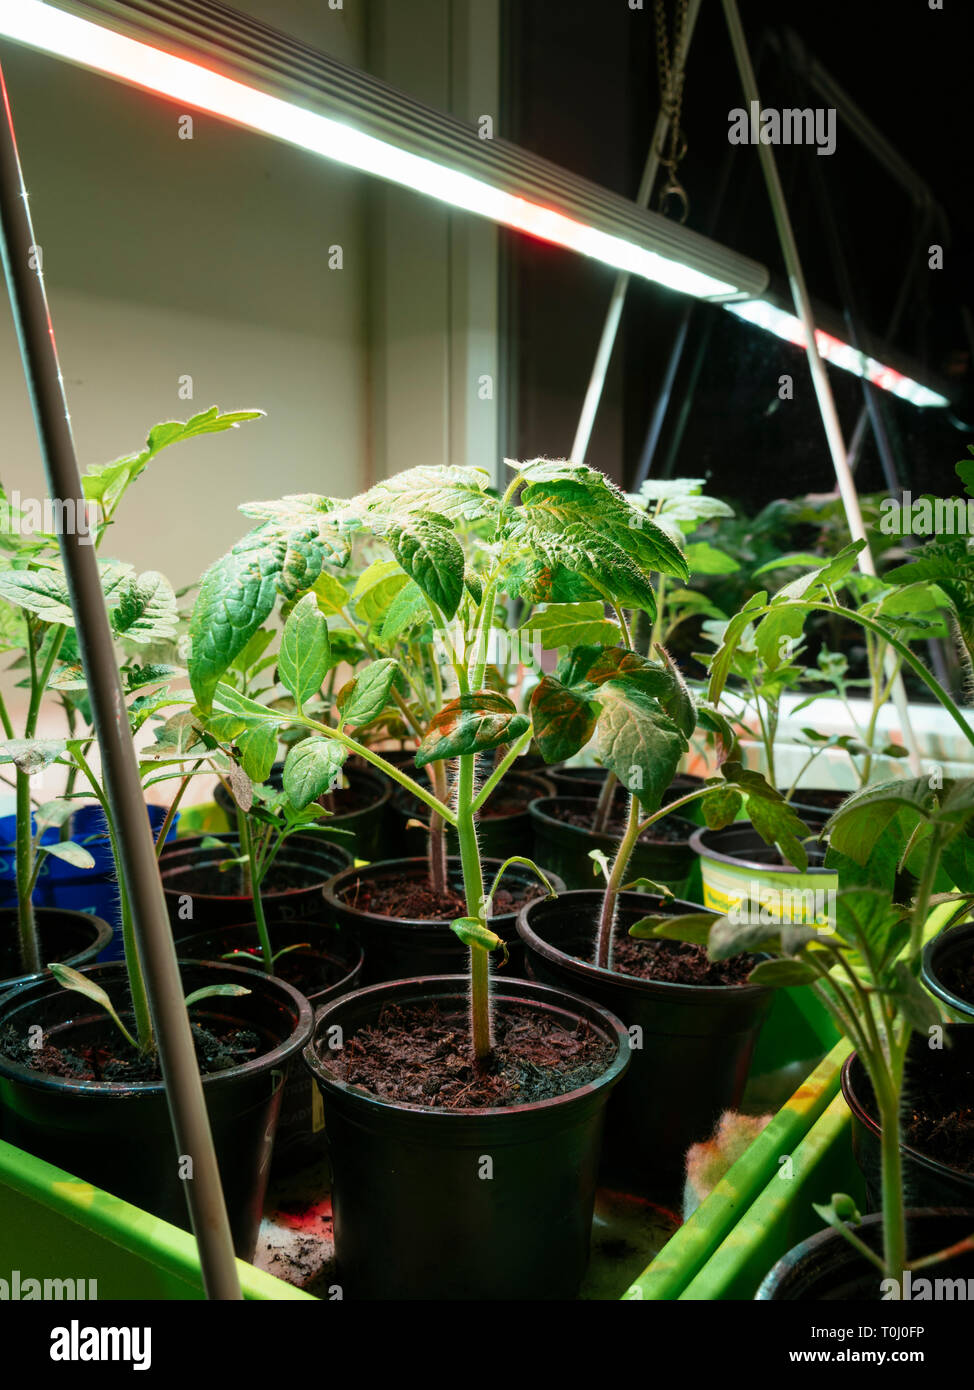 La croissance des semis de tomates à l'intérieur sur un rebord de fenêtre sous une lumière croître. Banque D'Images